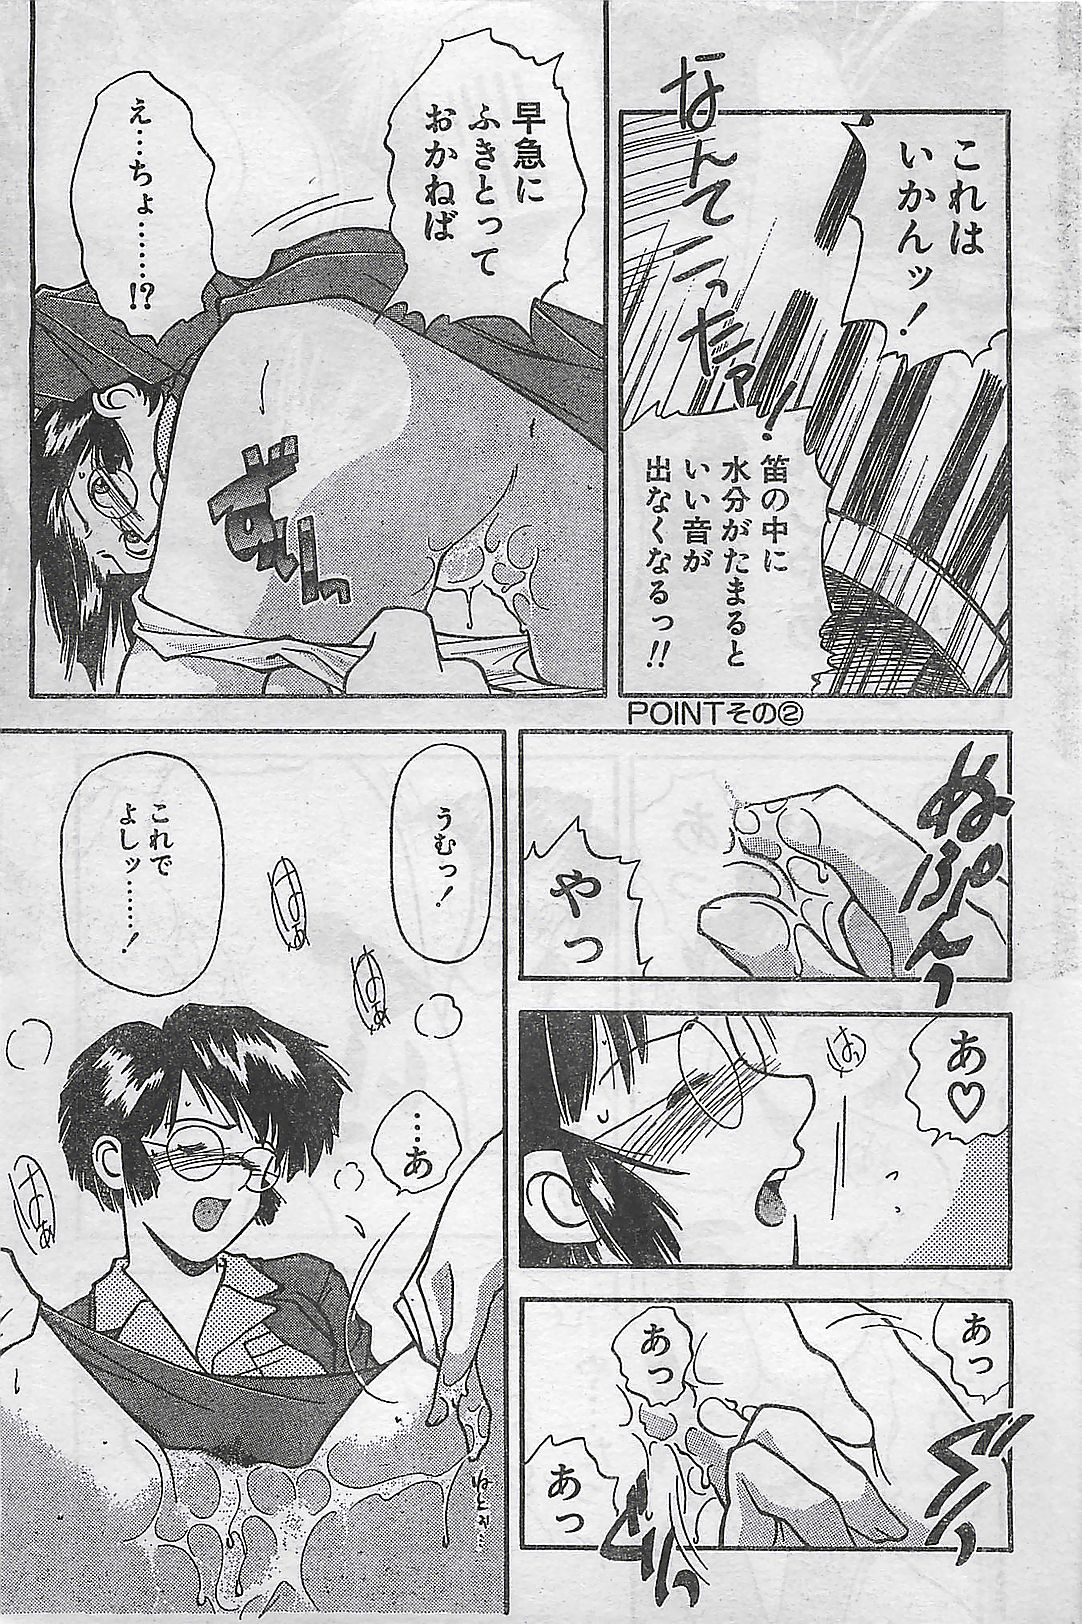 (雑誌) COMIC ナチュラル・ハイ Vol.31 1998年03月号